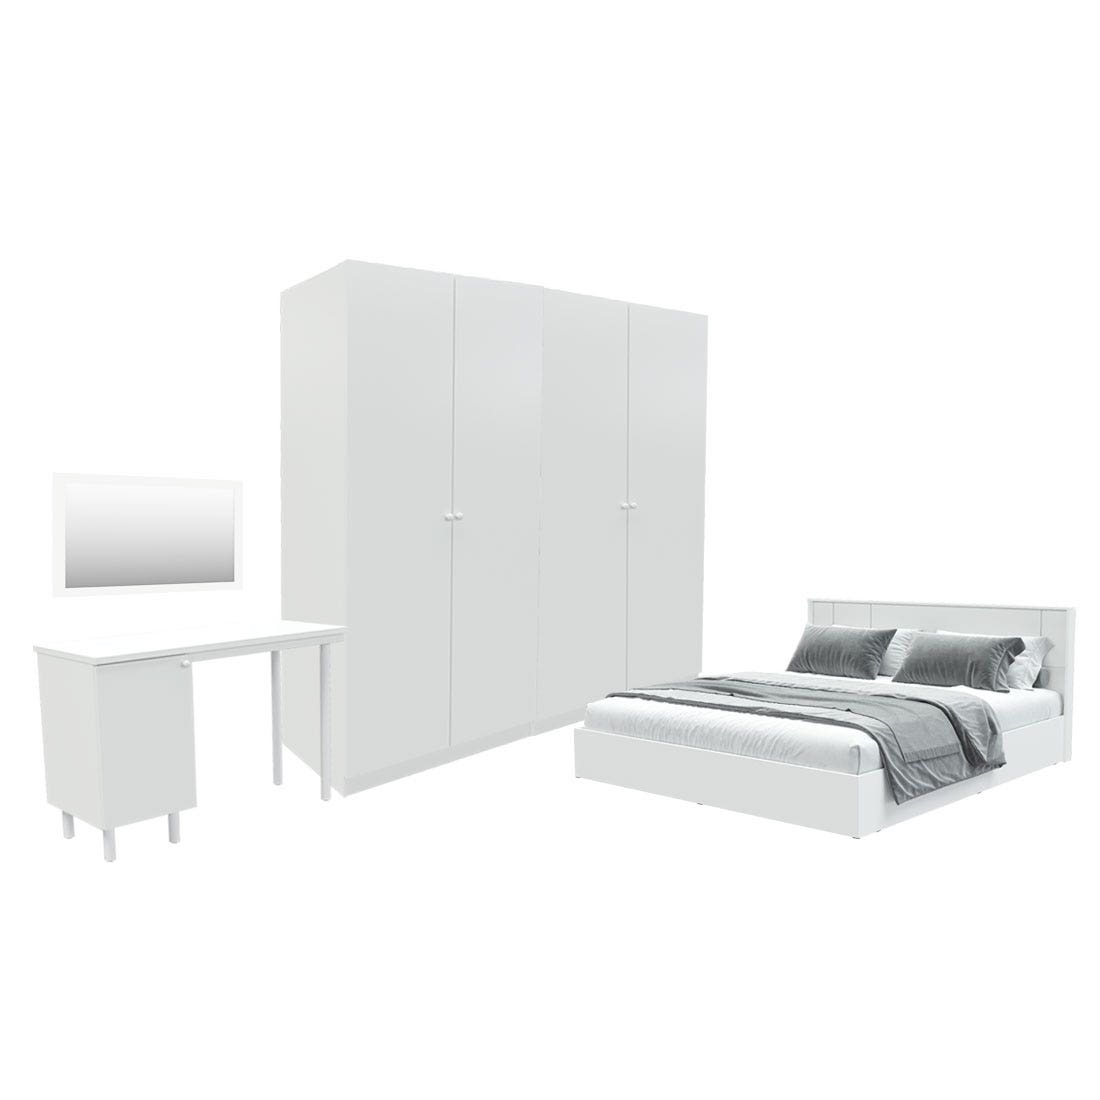 ชุดห้องนอน ขนาด 5 ฟุต รุ่น Pearliz และ ตู้ Blox ขนาด 200 ซม. พร้อมโต๊ะทำงาน สีขาว มิดกรอส01